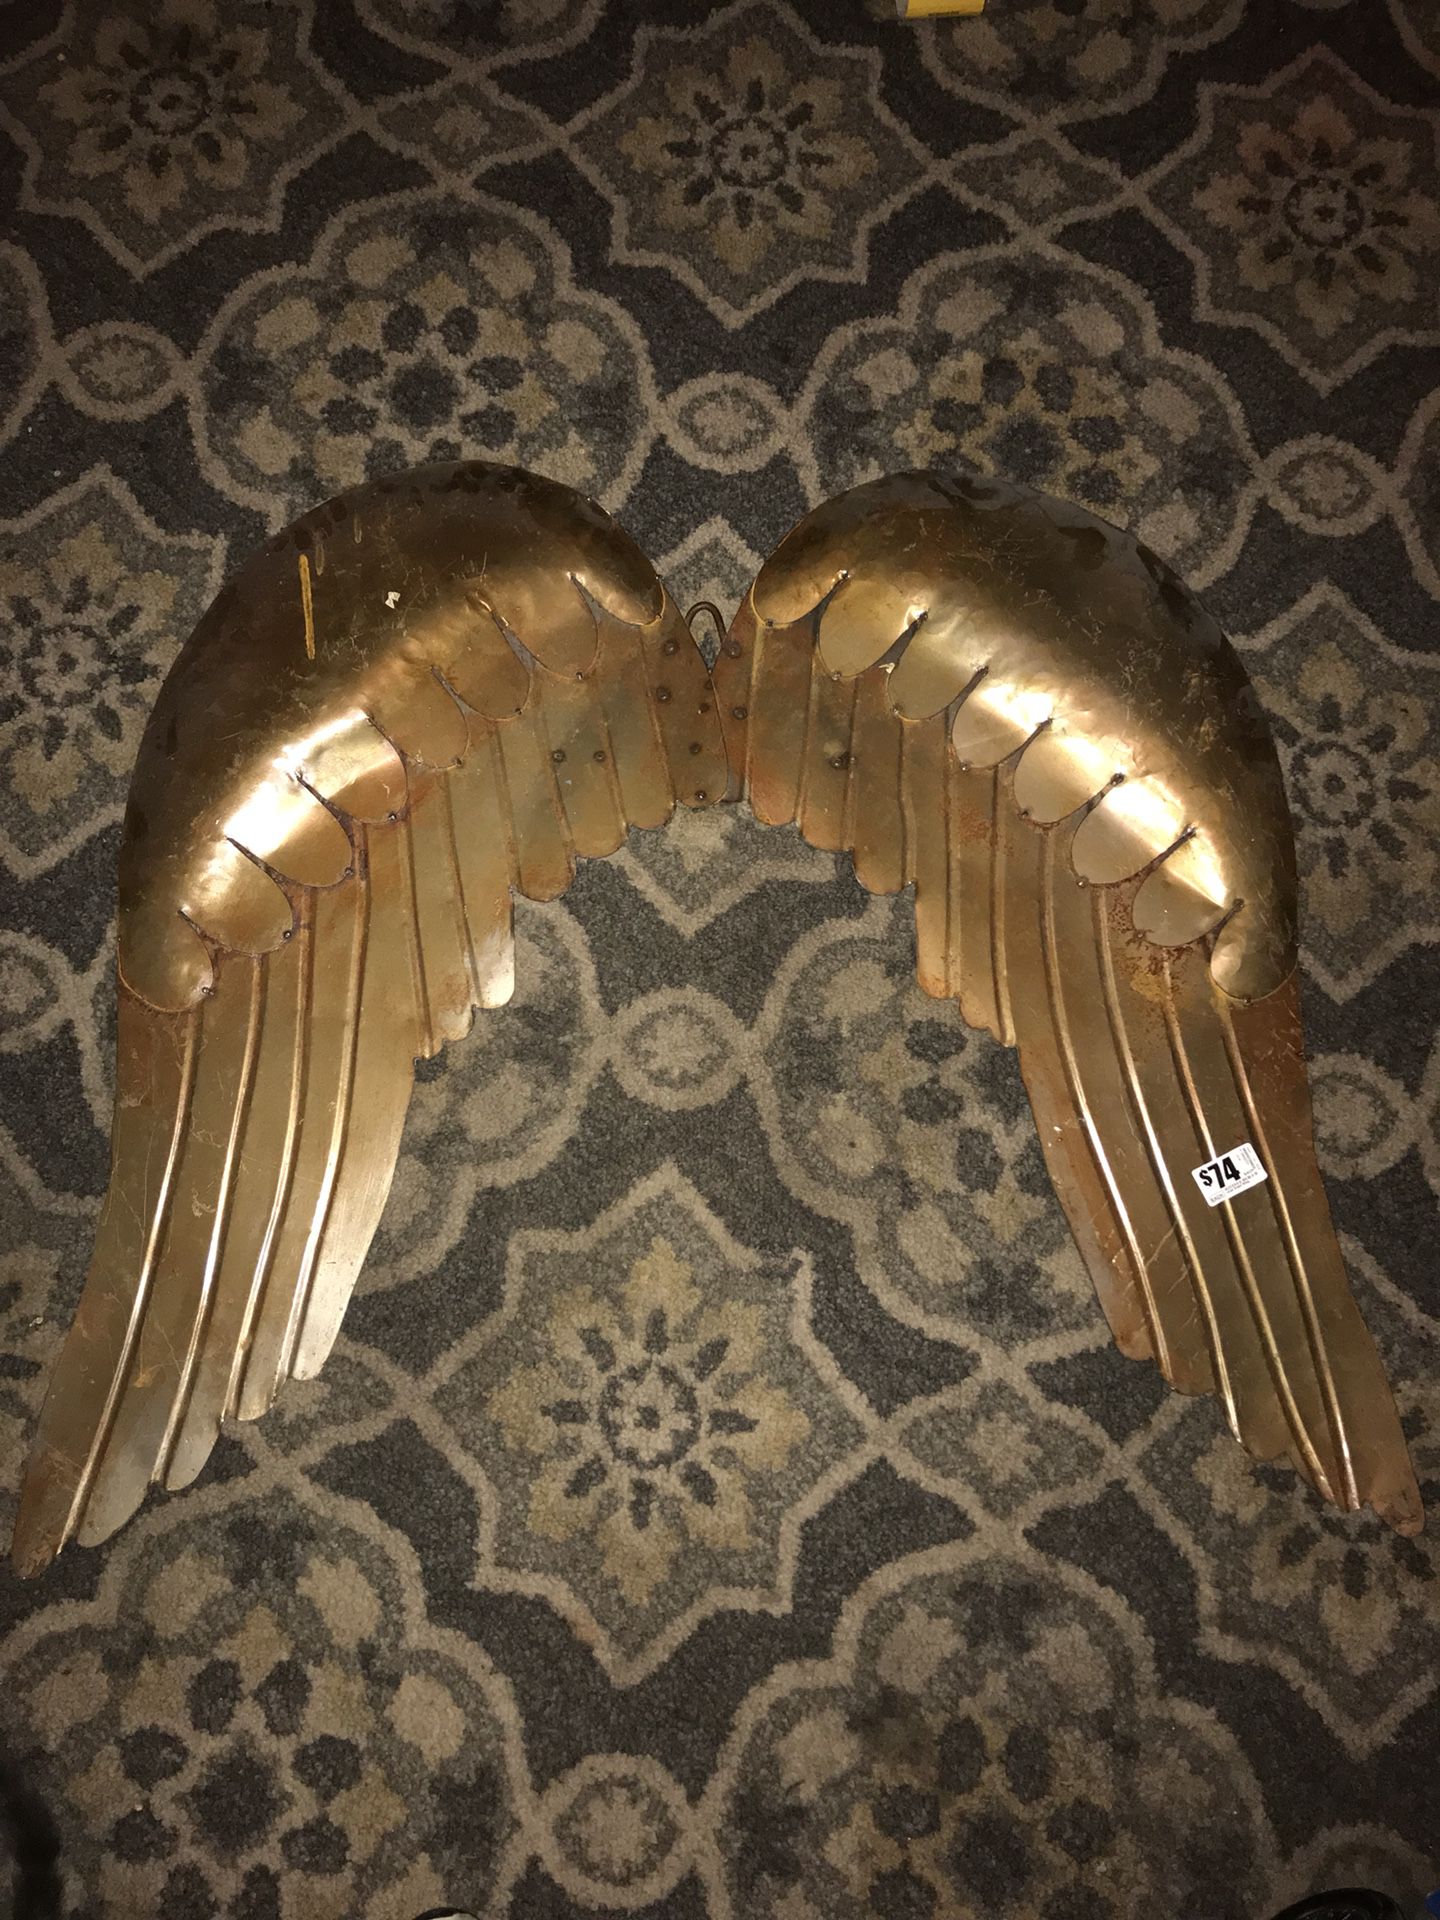 Large angel wings